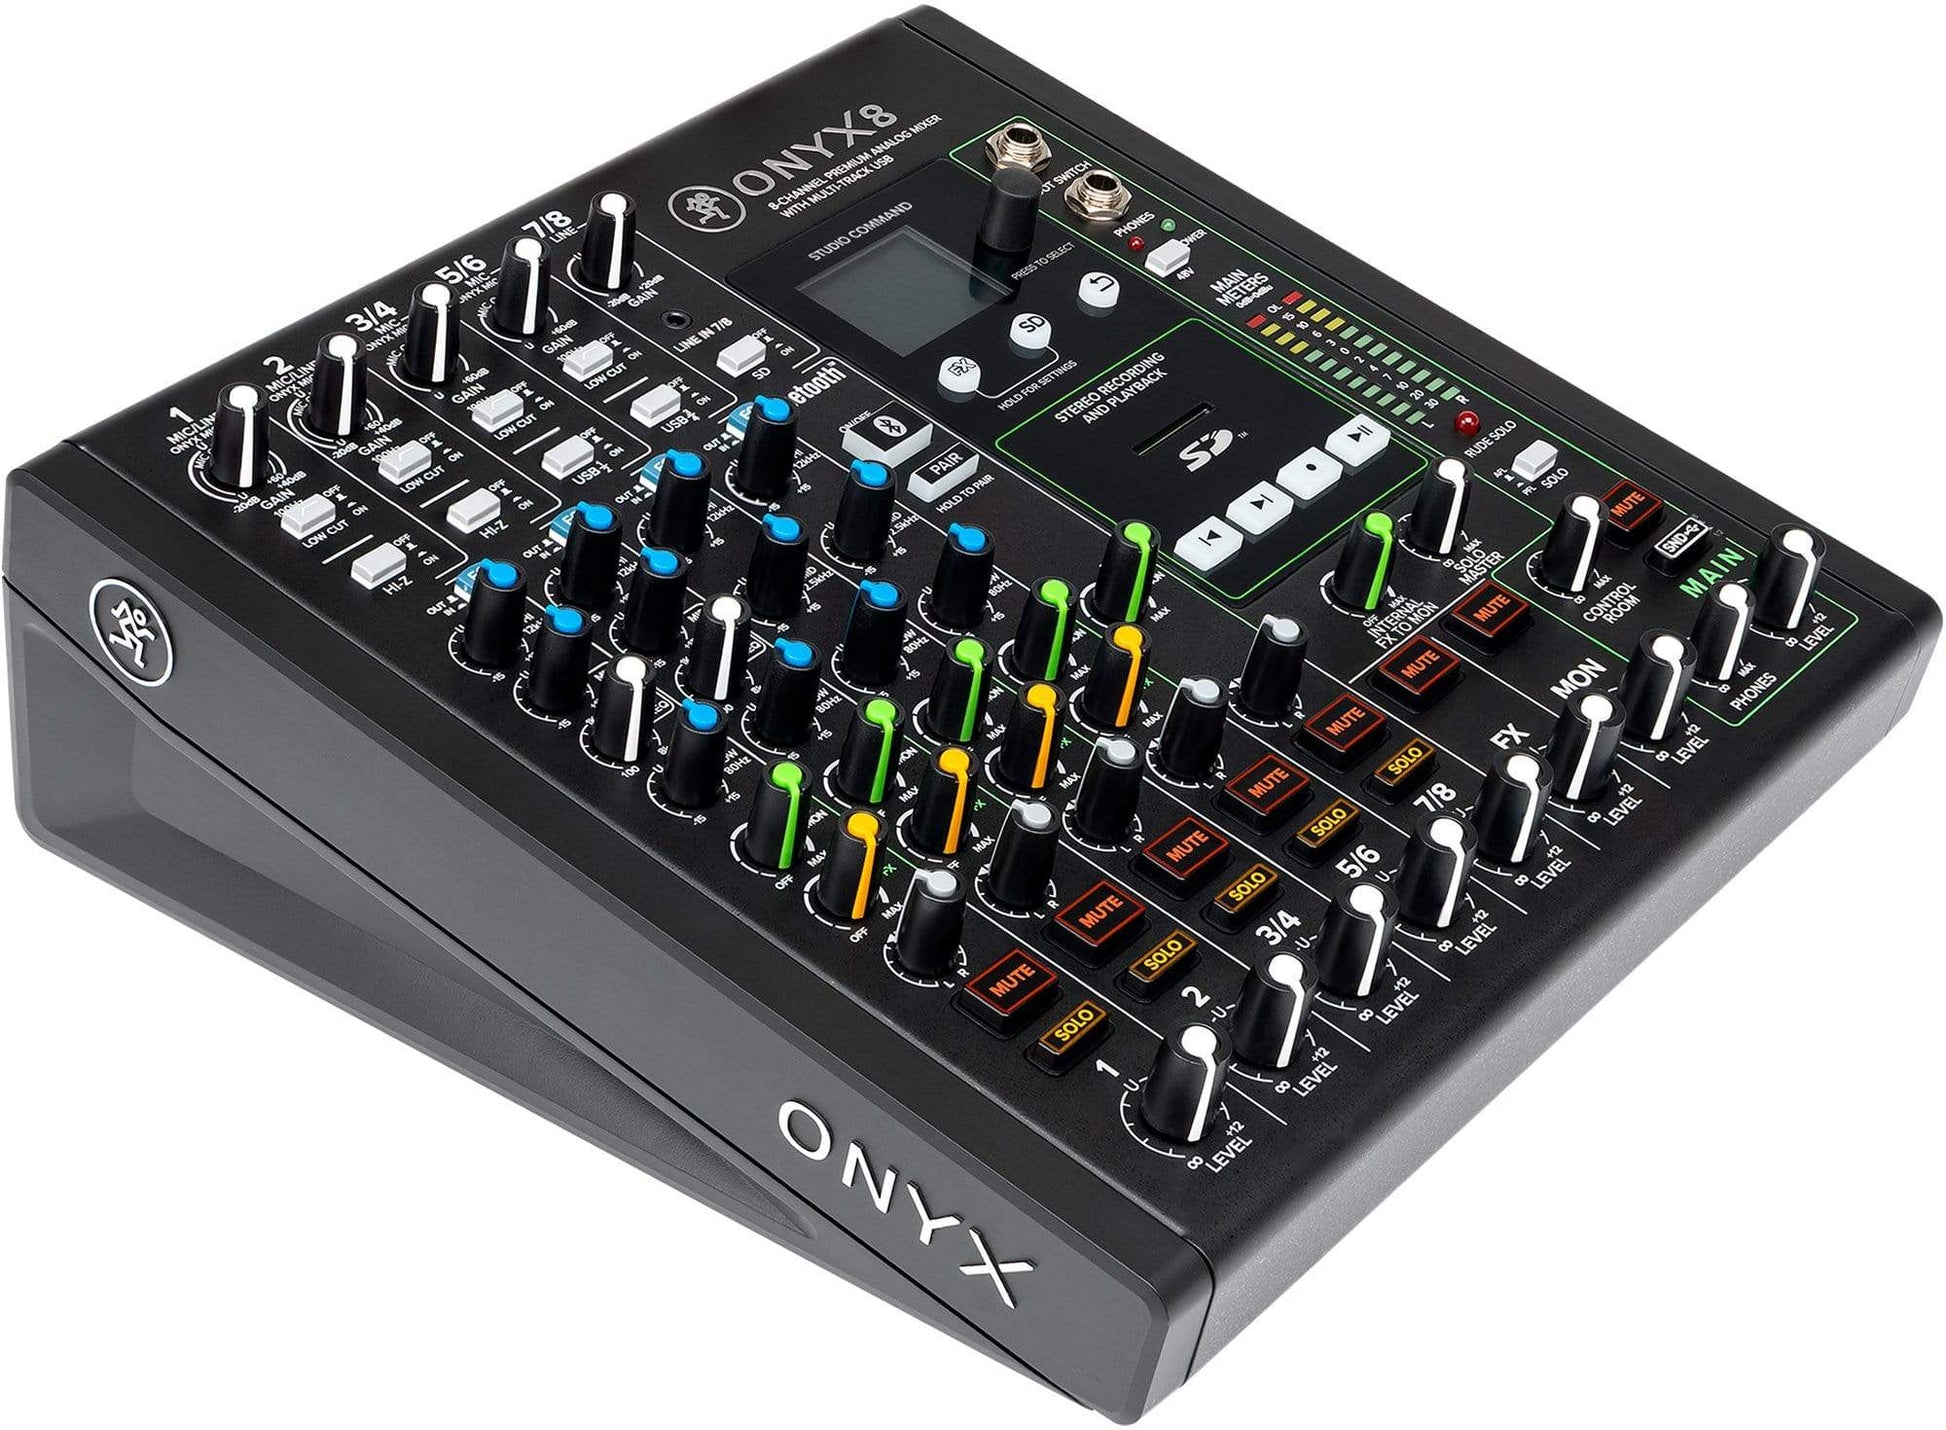 Mackie Onyx8 8-Ch Analog Mixer w/ Multi-Track USB - ProSound and Stage Lighting